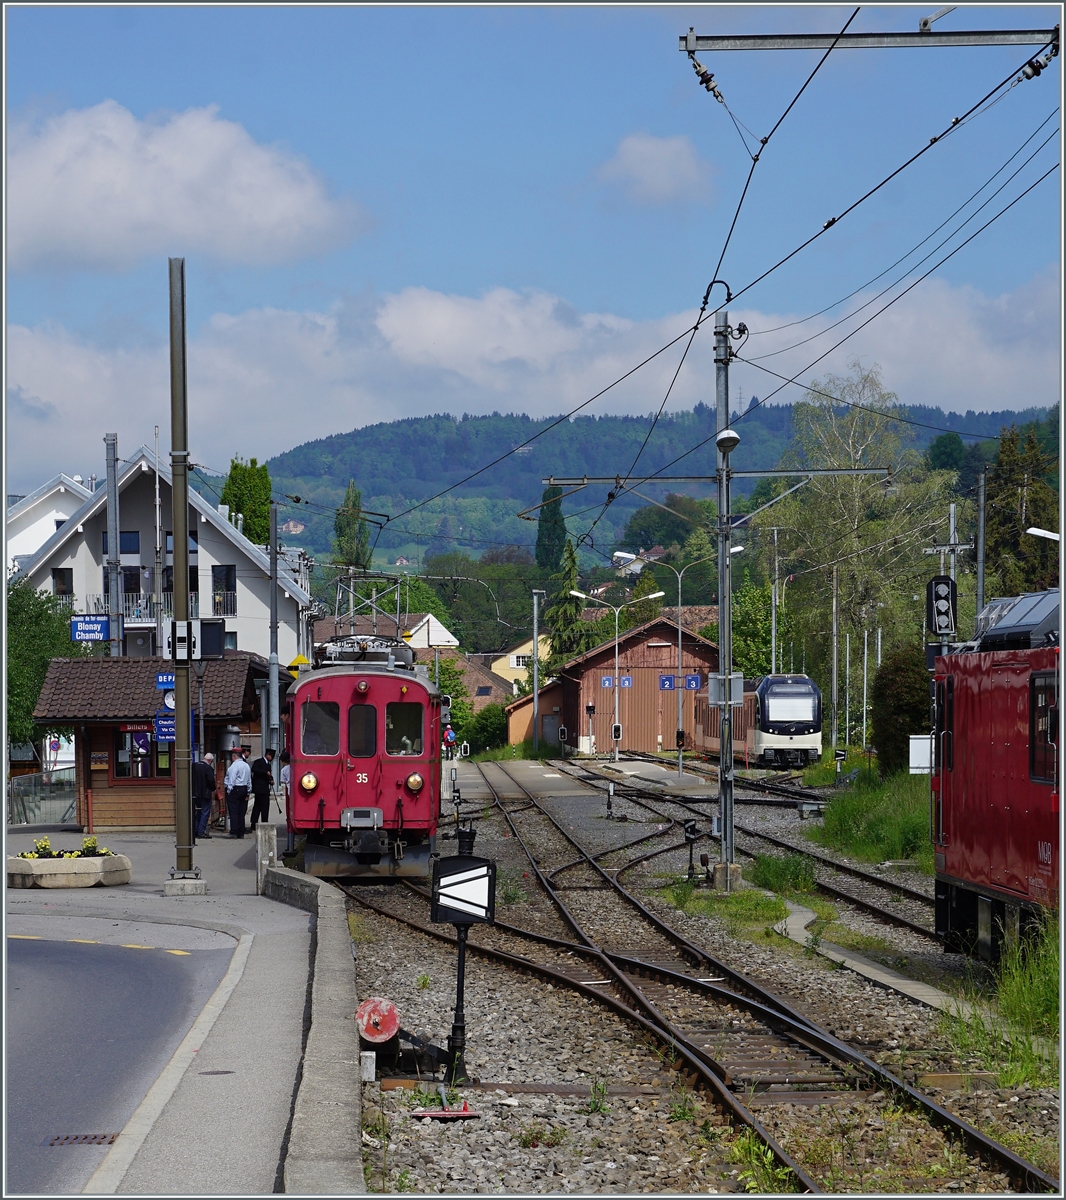 Der Bernina Bahn ABe 4/4 35 wartet in Blonay mit einem Museumszug auf die Abfahrt nach Chaulin.

7. Mai 2022